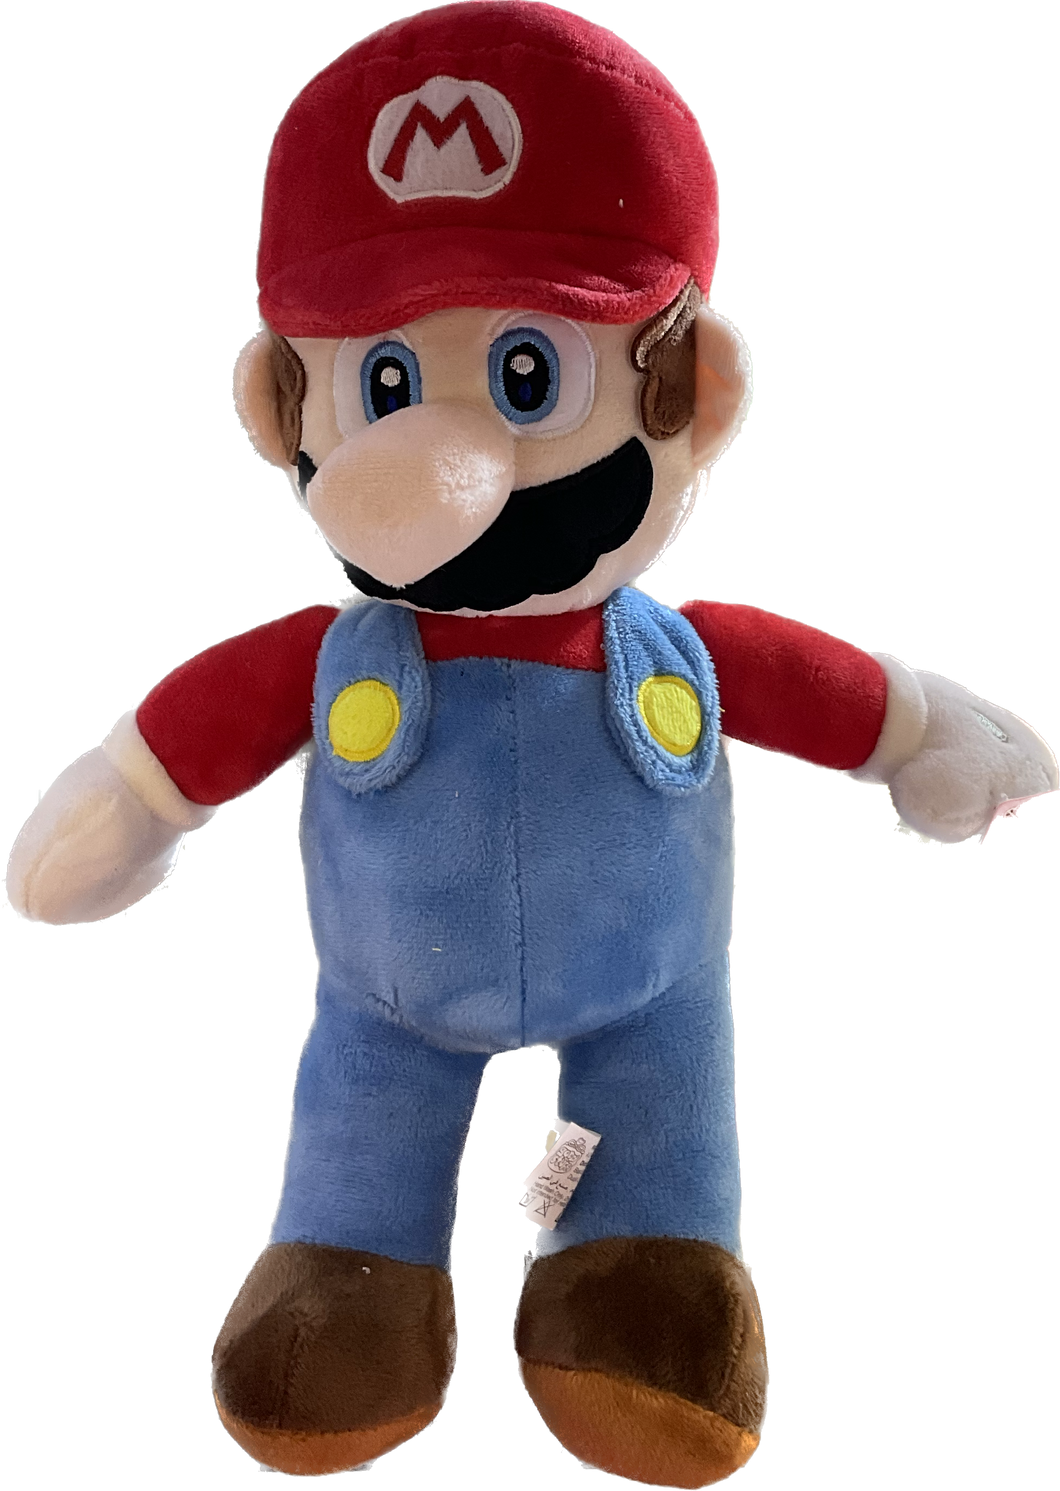 Mario plushies